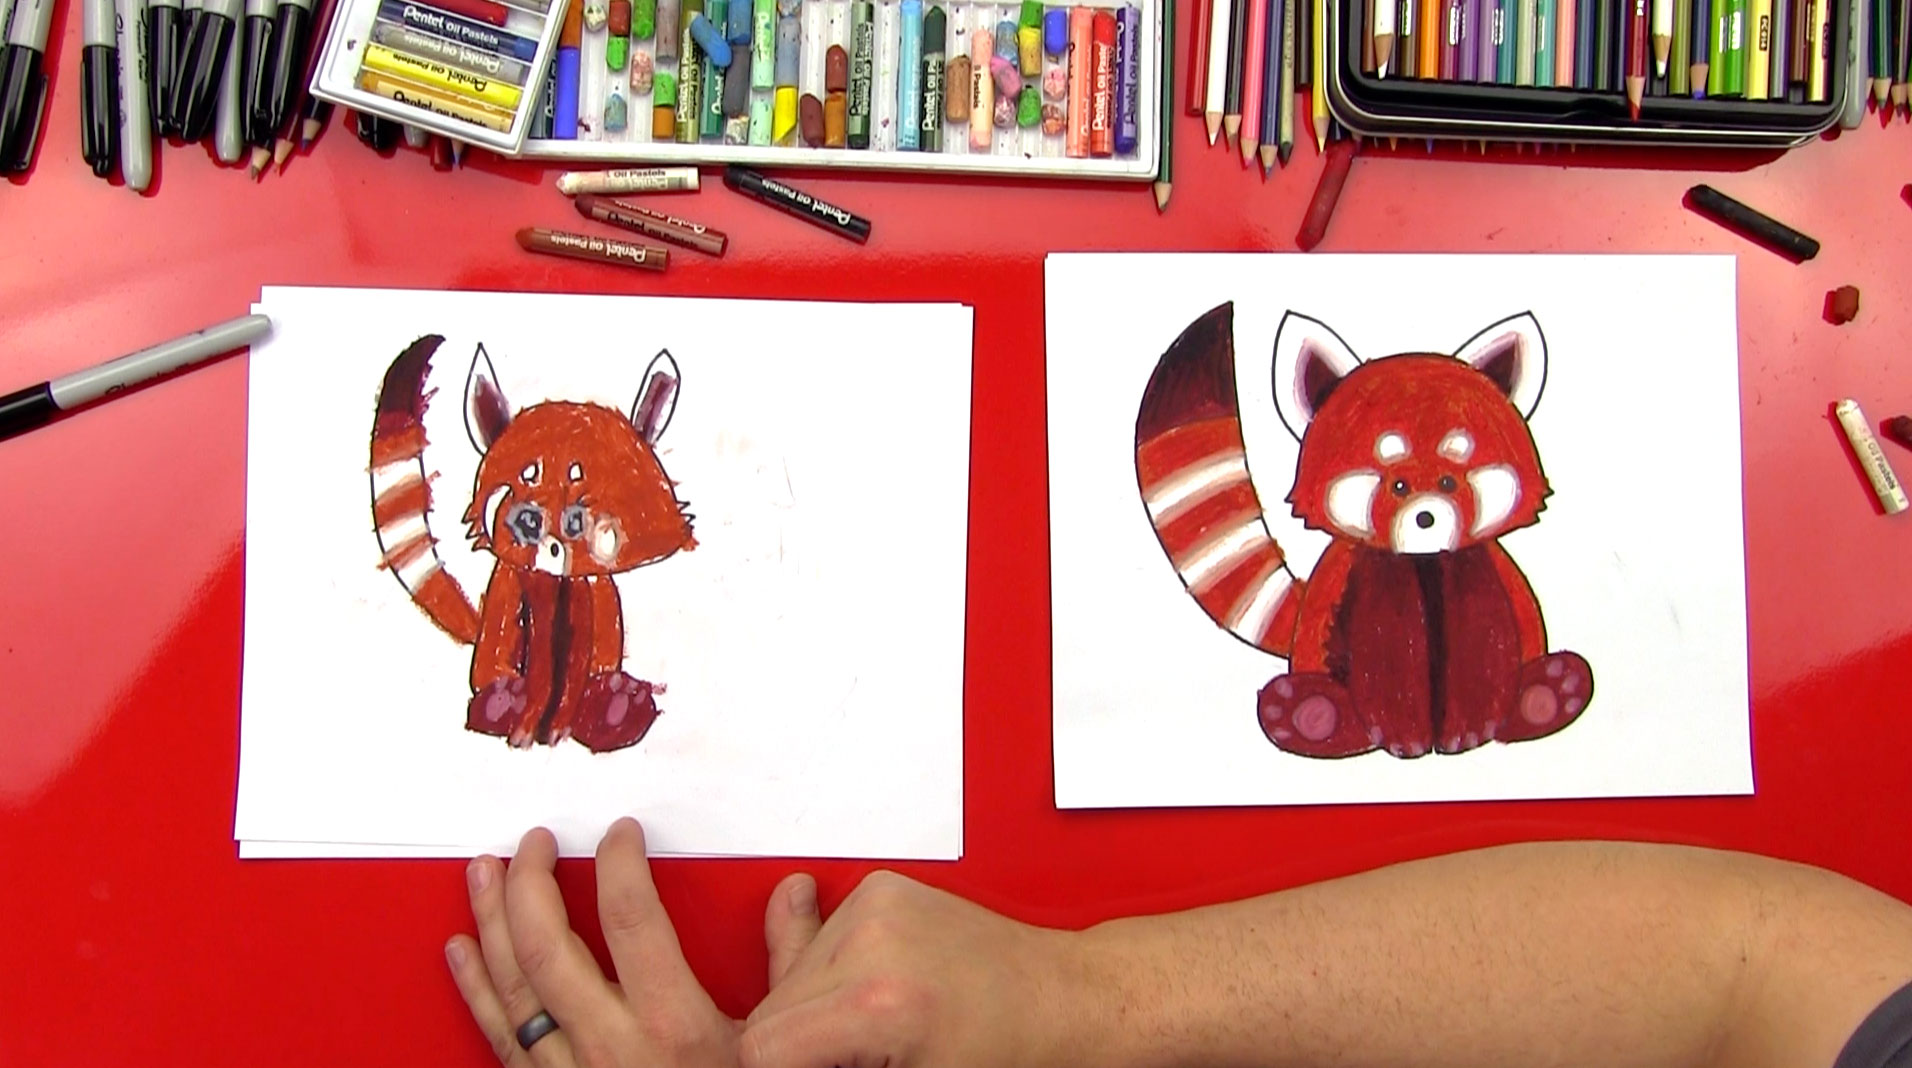 red panda drawing